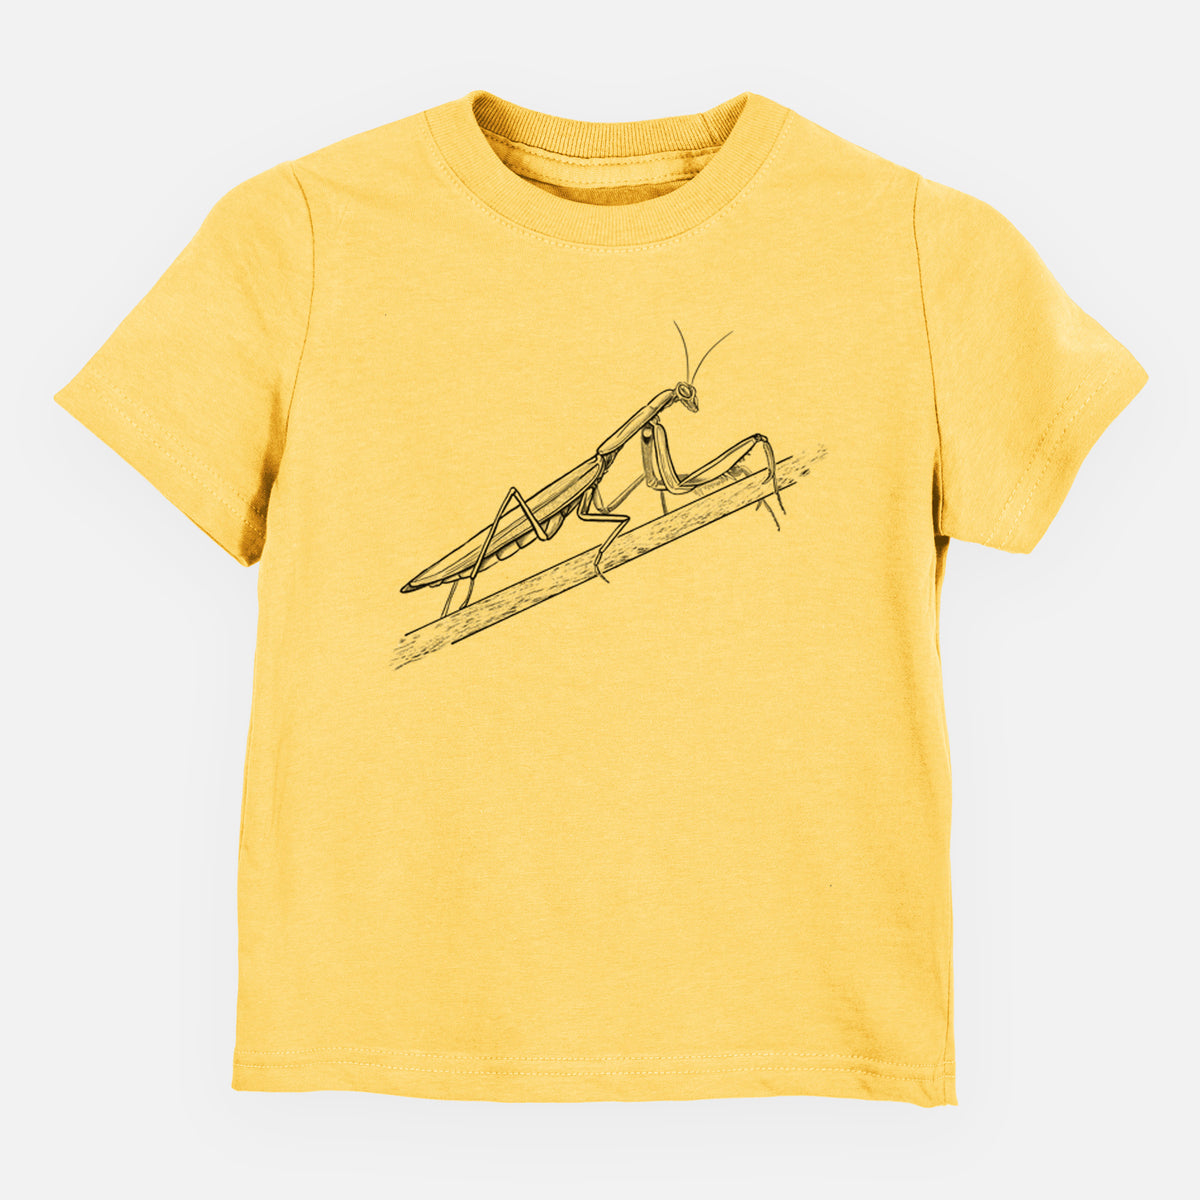 European Mantis - Mantis religiosa - Kids Shirt